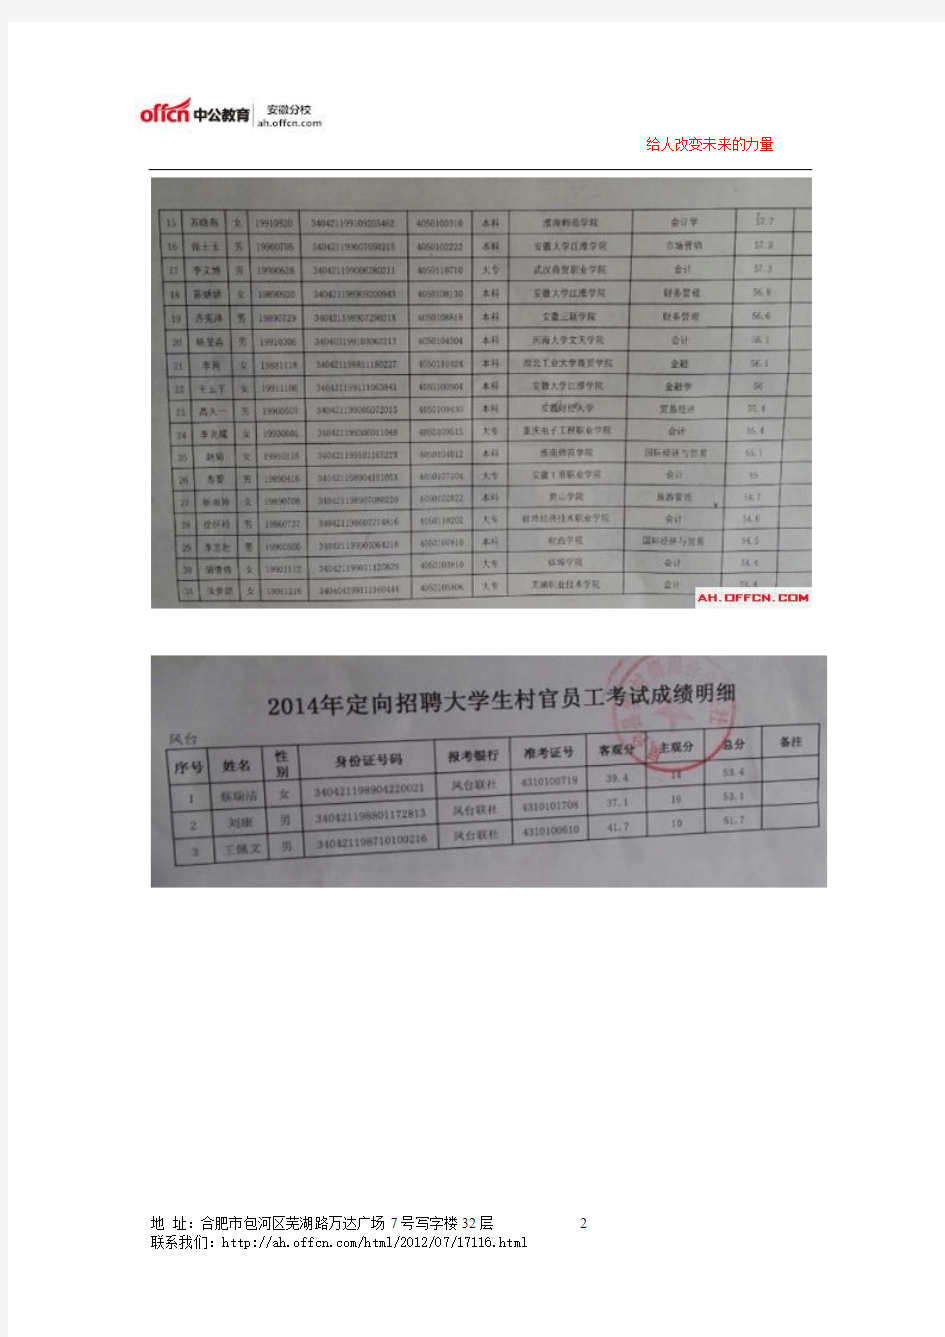 2014年淮南市凤台农村商业银行员工招聘面试入围名单公示